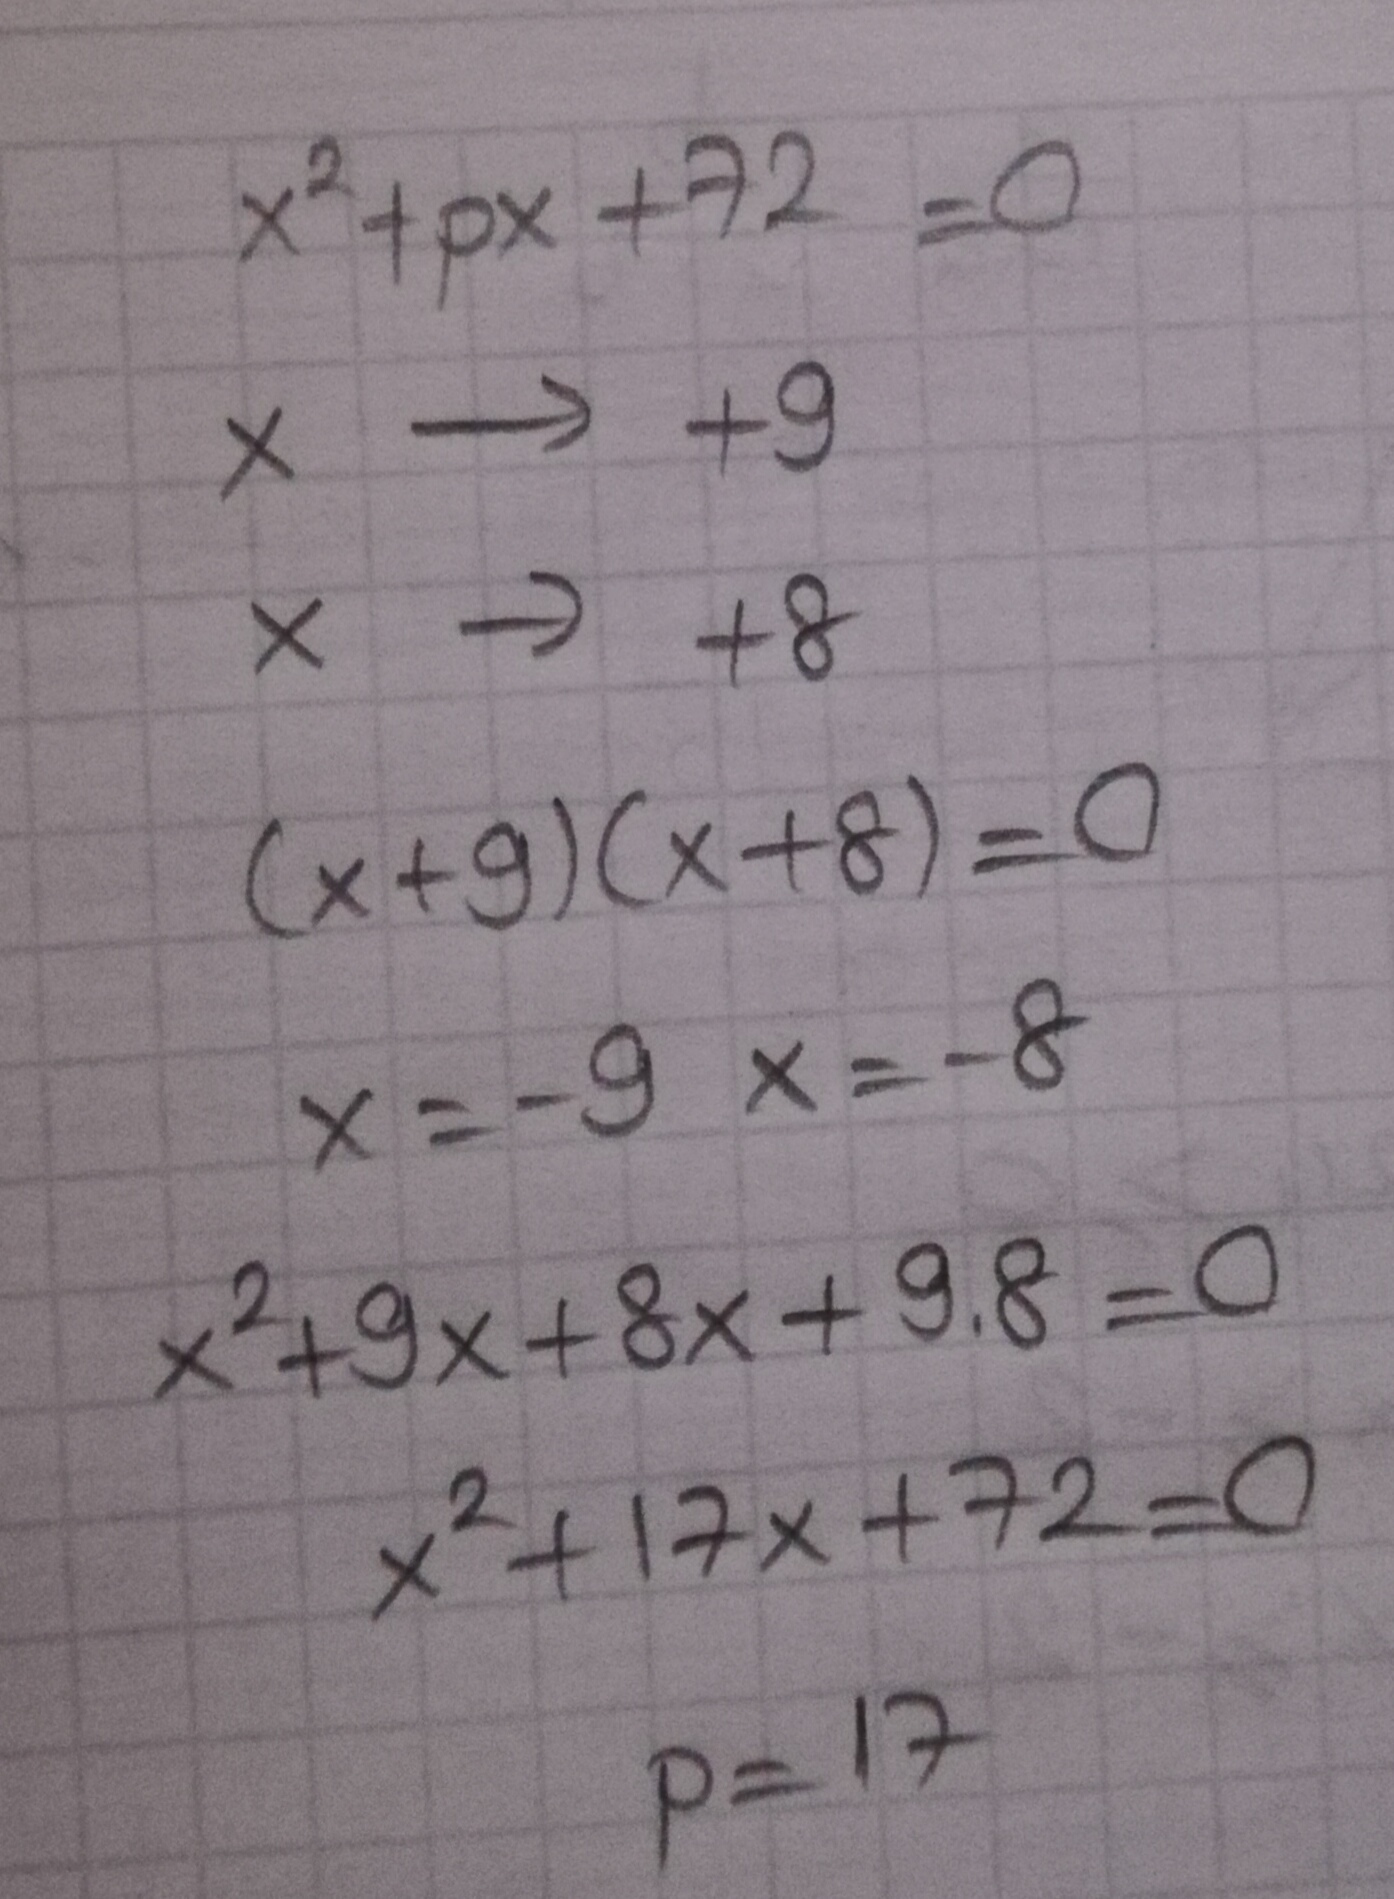 X2 px 56 0. Втуравнении x²+px-18=0.